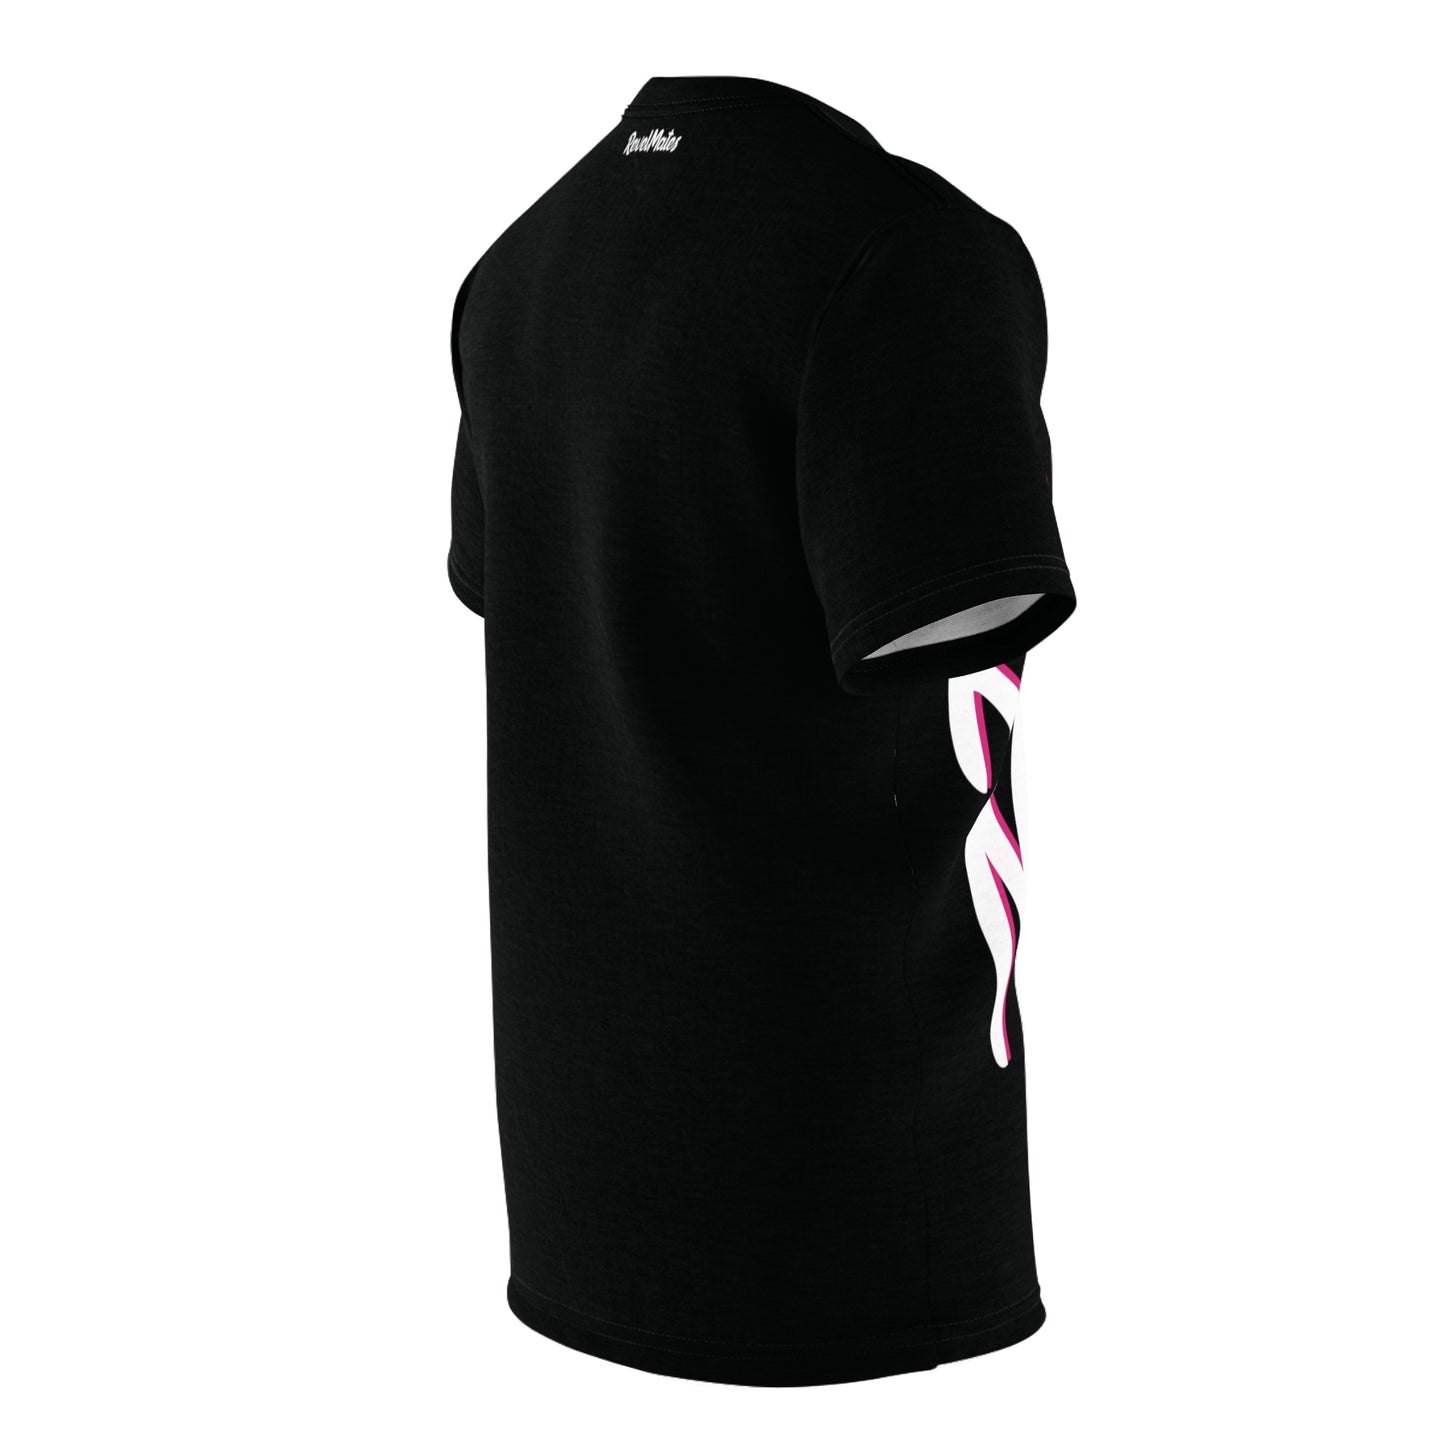 Unisex T-Shirt | All Over Print Tee | Black & White RevelMates Design